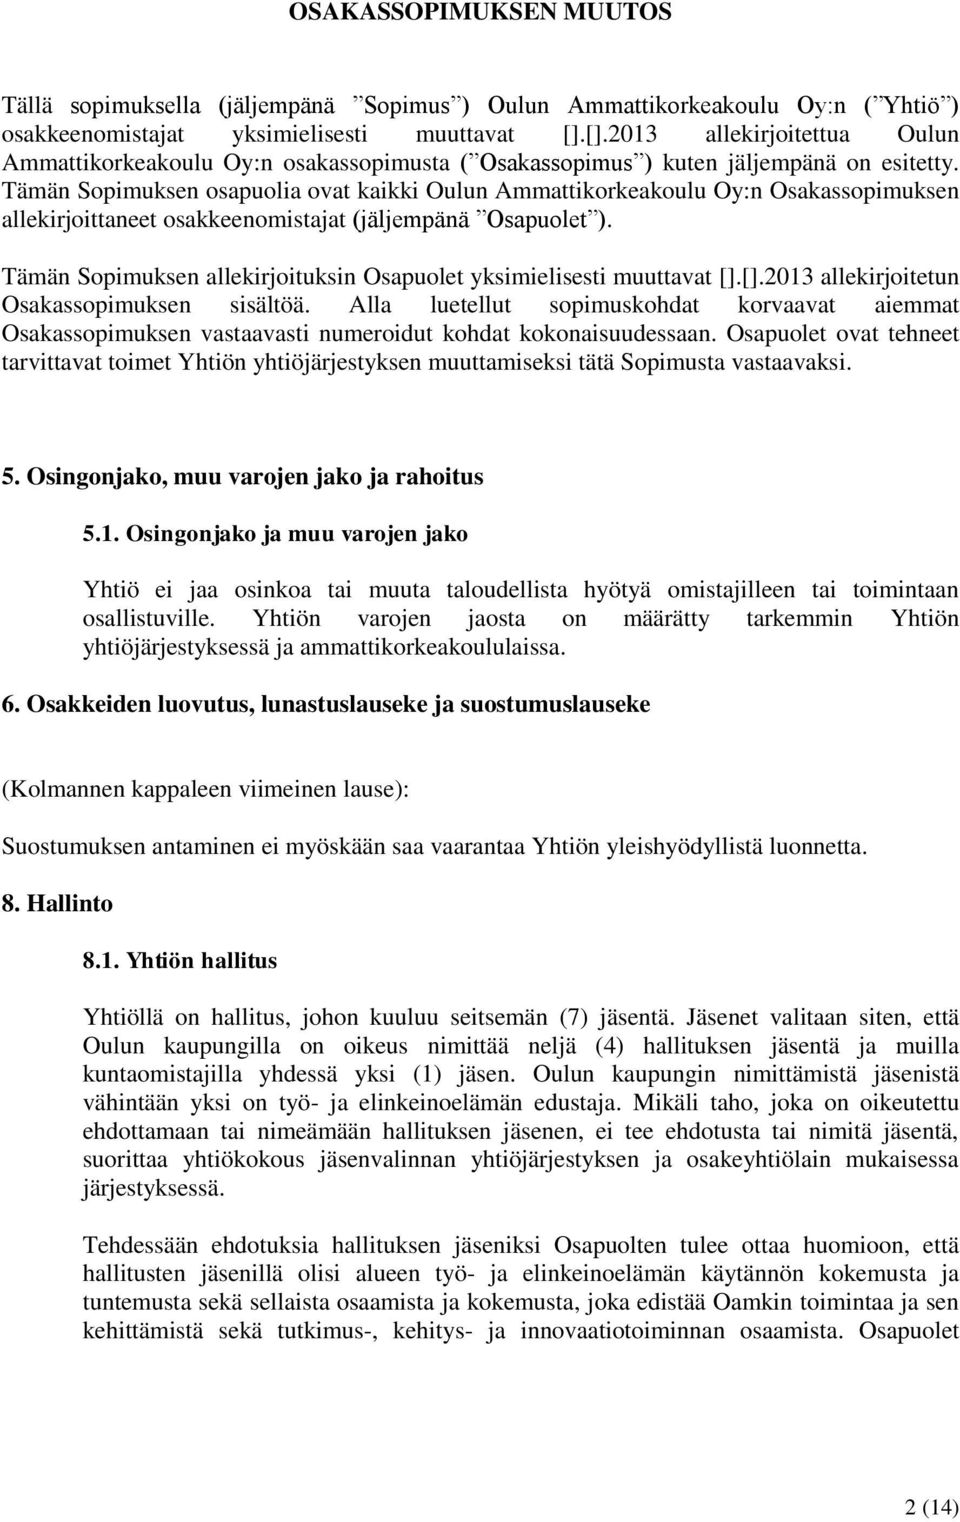 Tämän Sopimuksen osapuolia ovat kaikki Oulun Ammattikorkeakoulu Oy:n Osakassopimuksen allekirjoittaneet osakkeenomistajat (jäljempänä Osapuolet ).